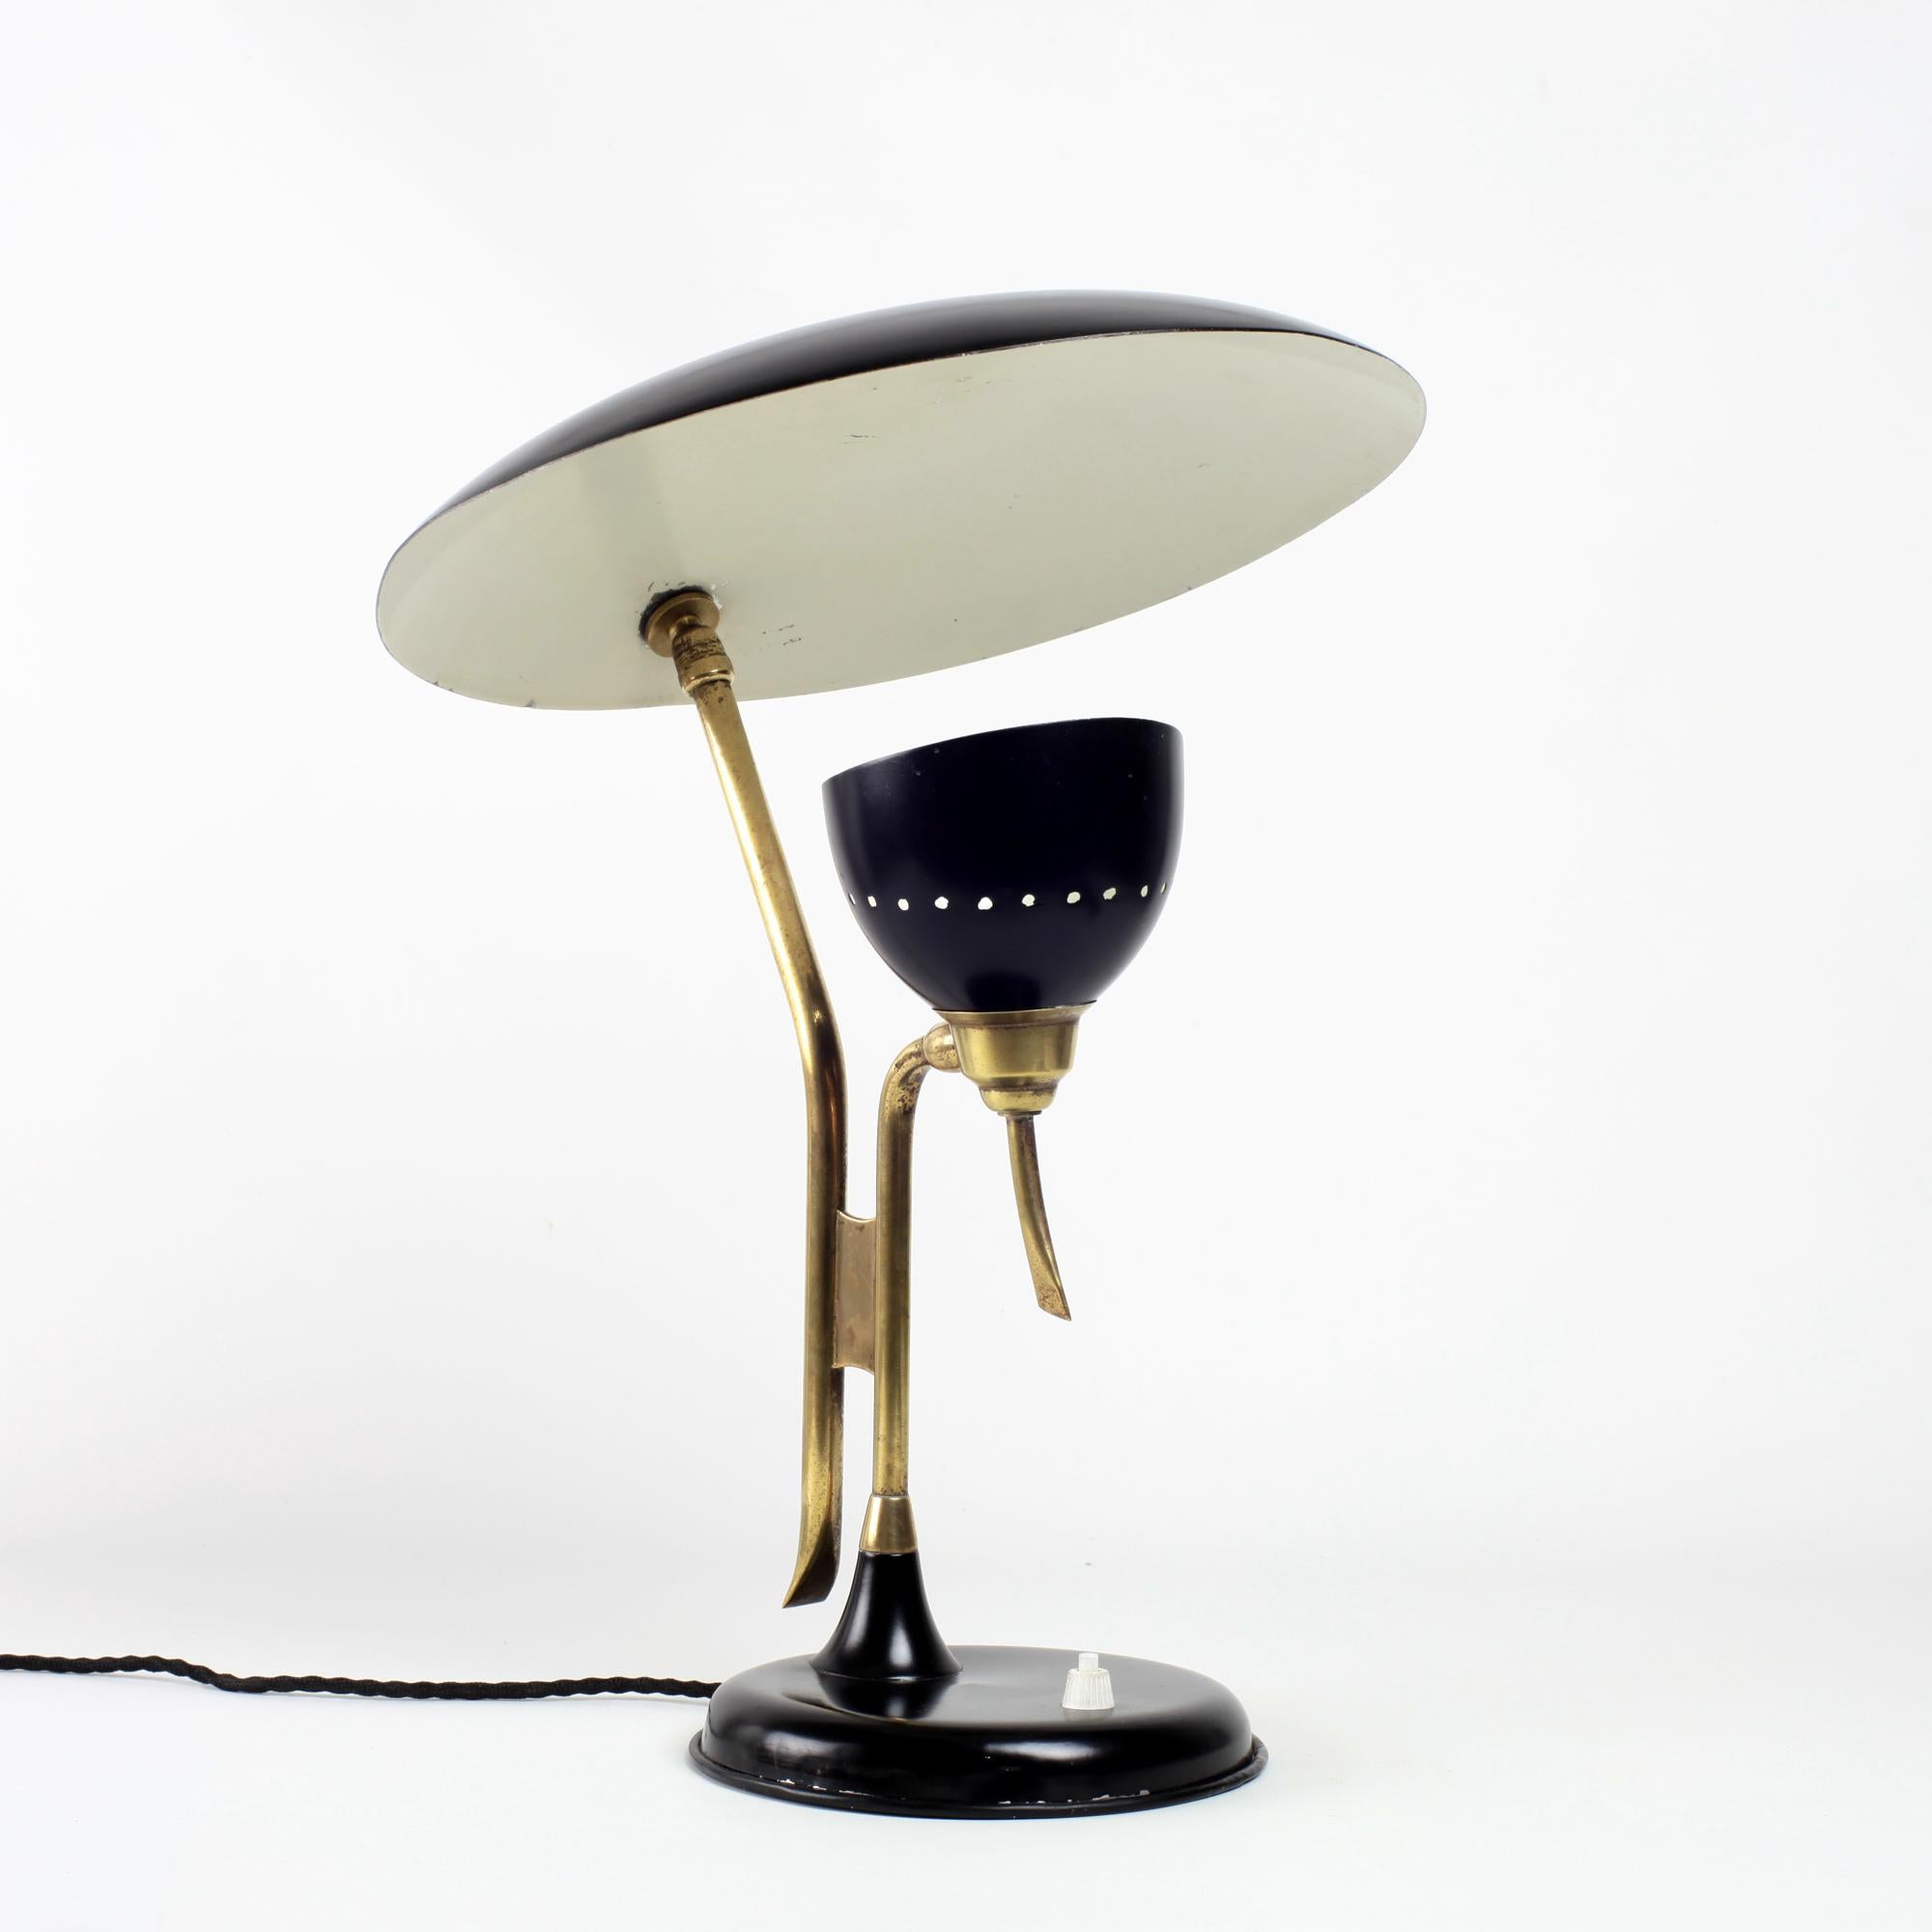 Italian Oscar Torlasco Table Lamp by Lumi Italy 1950's